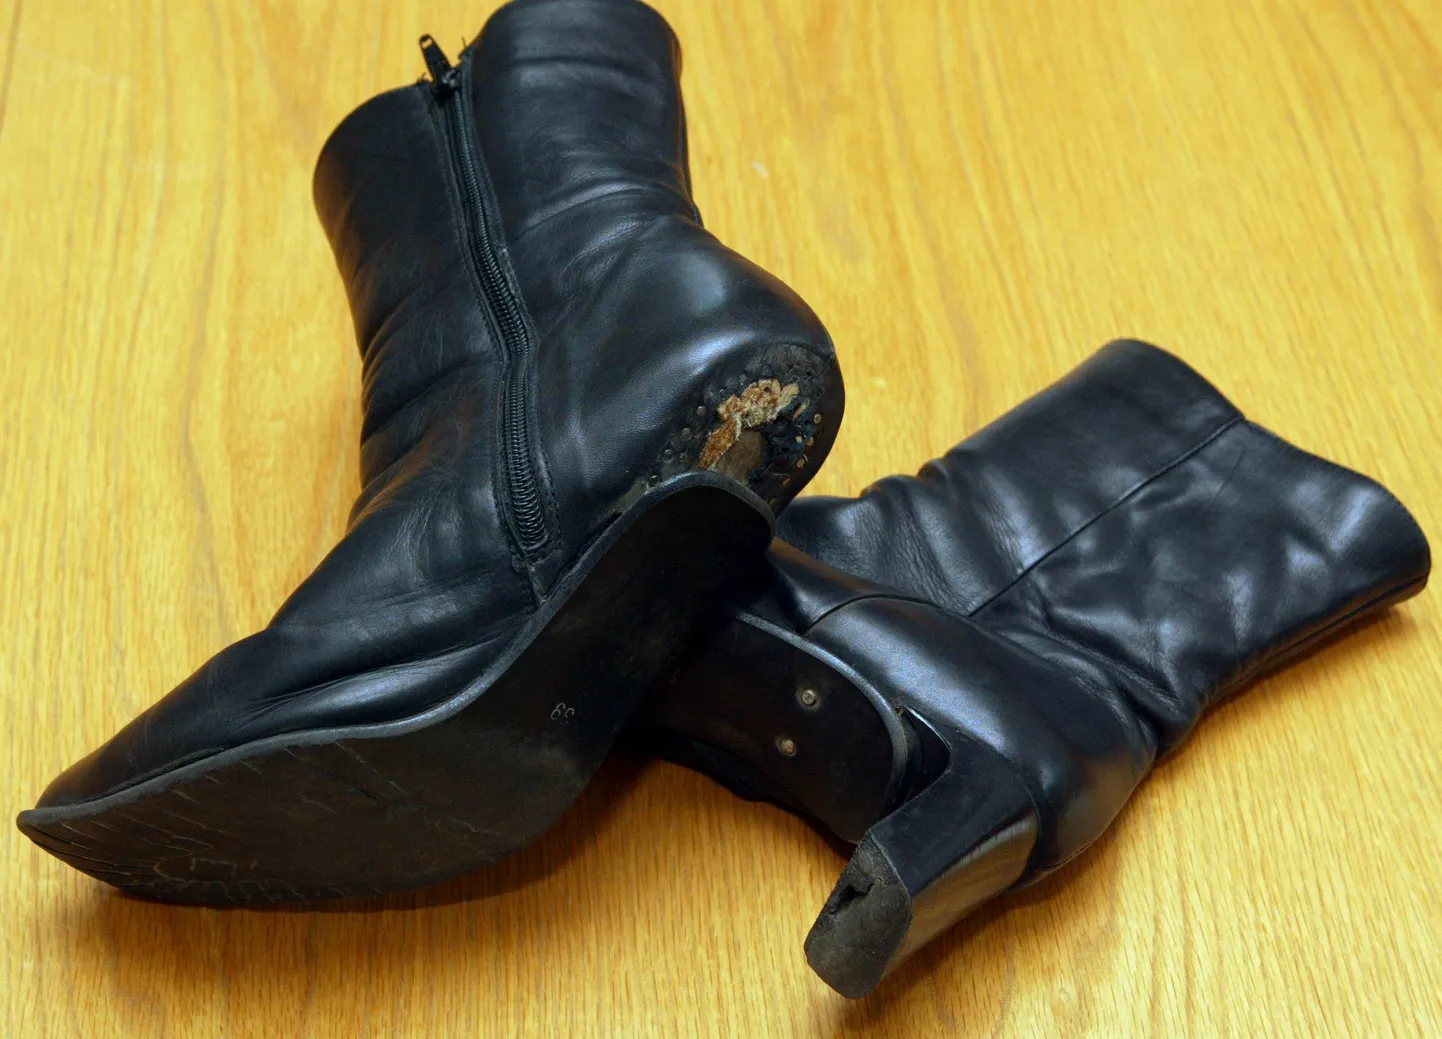 Популярная претензия потребителей к торговцам: ботинки, не пережившие первой же эстонской лужи. Экспертиза обойдется дороже обуви, потраченное на беготню время – бесценно. Куда приятнее свалить эти хлопоты на специально обученных людей.